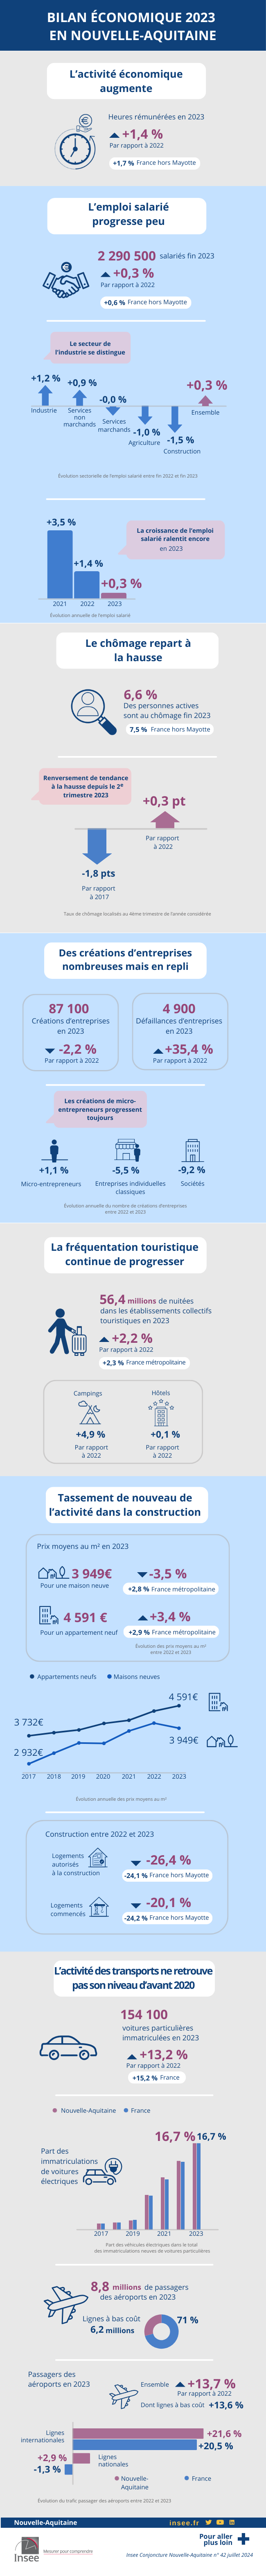 Bilan économique 2023 Nouvelle Aquitaine